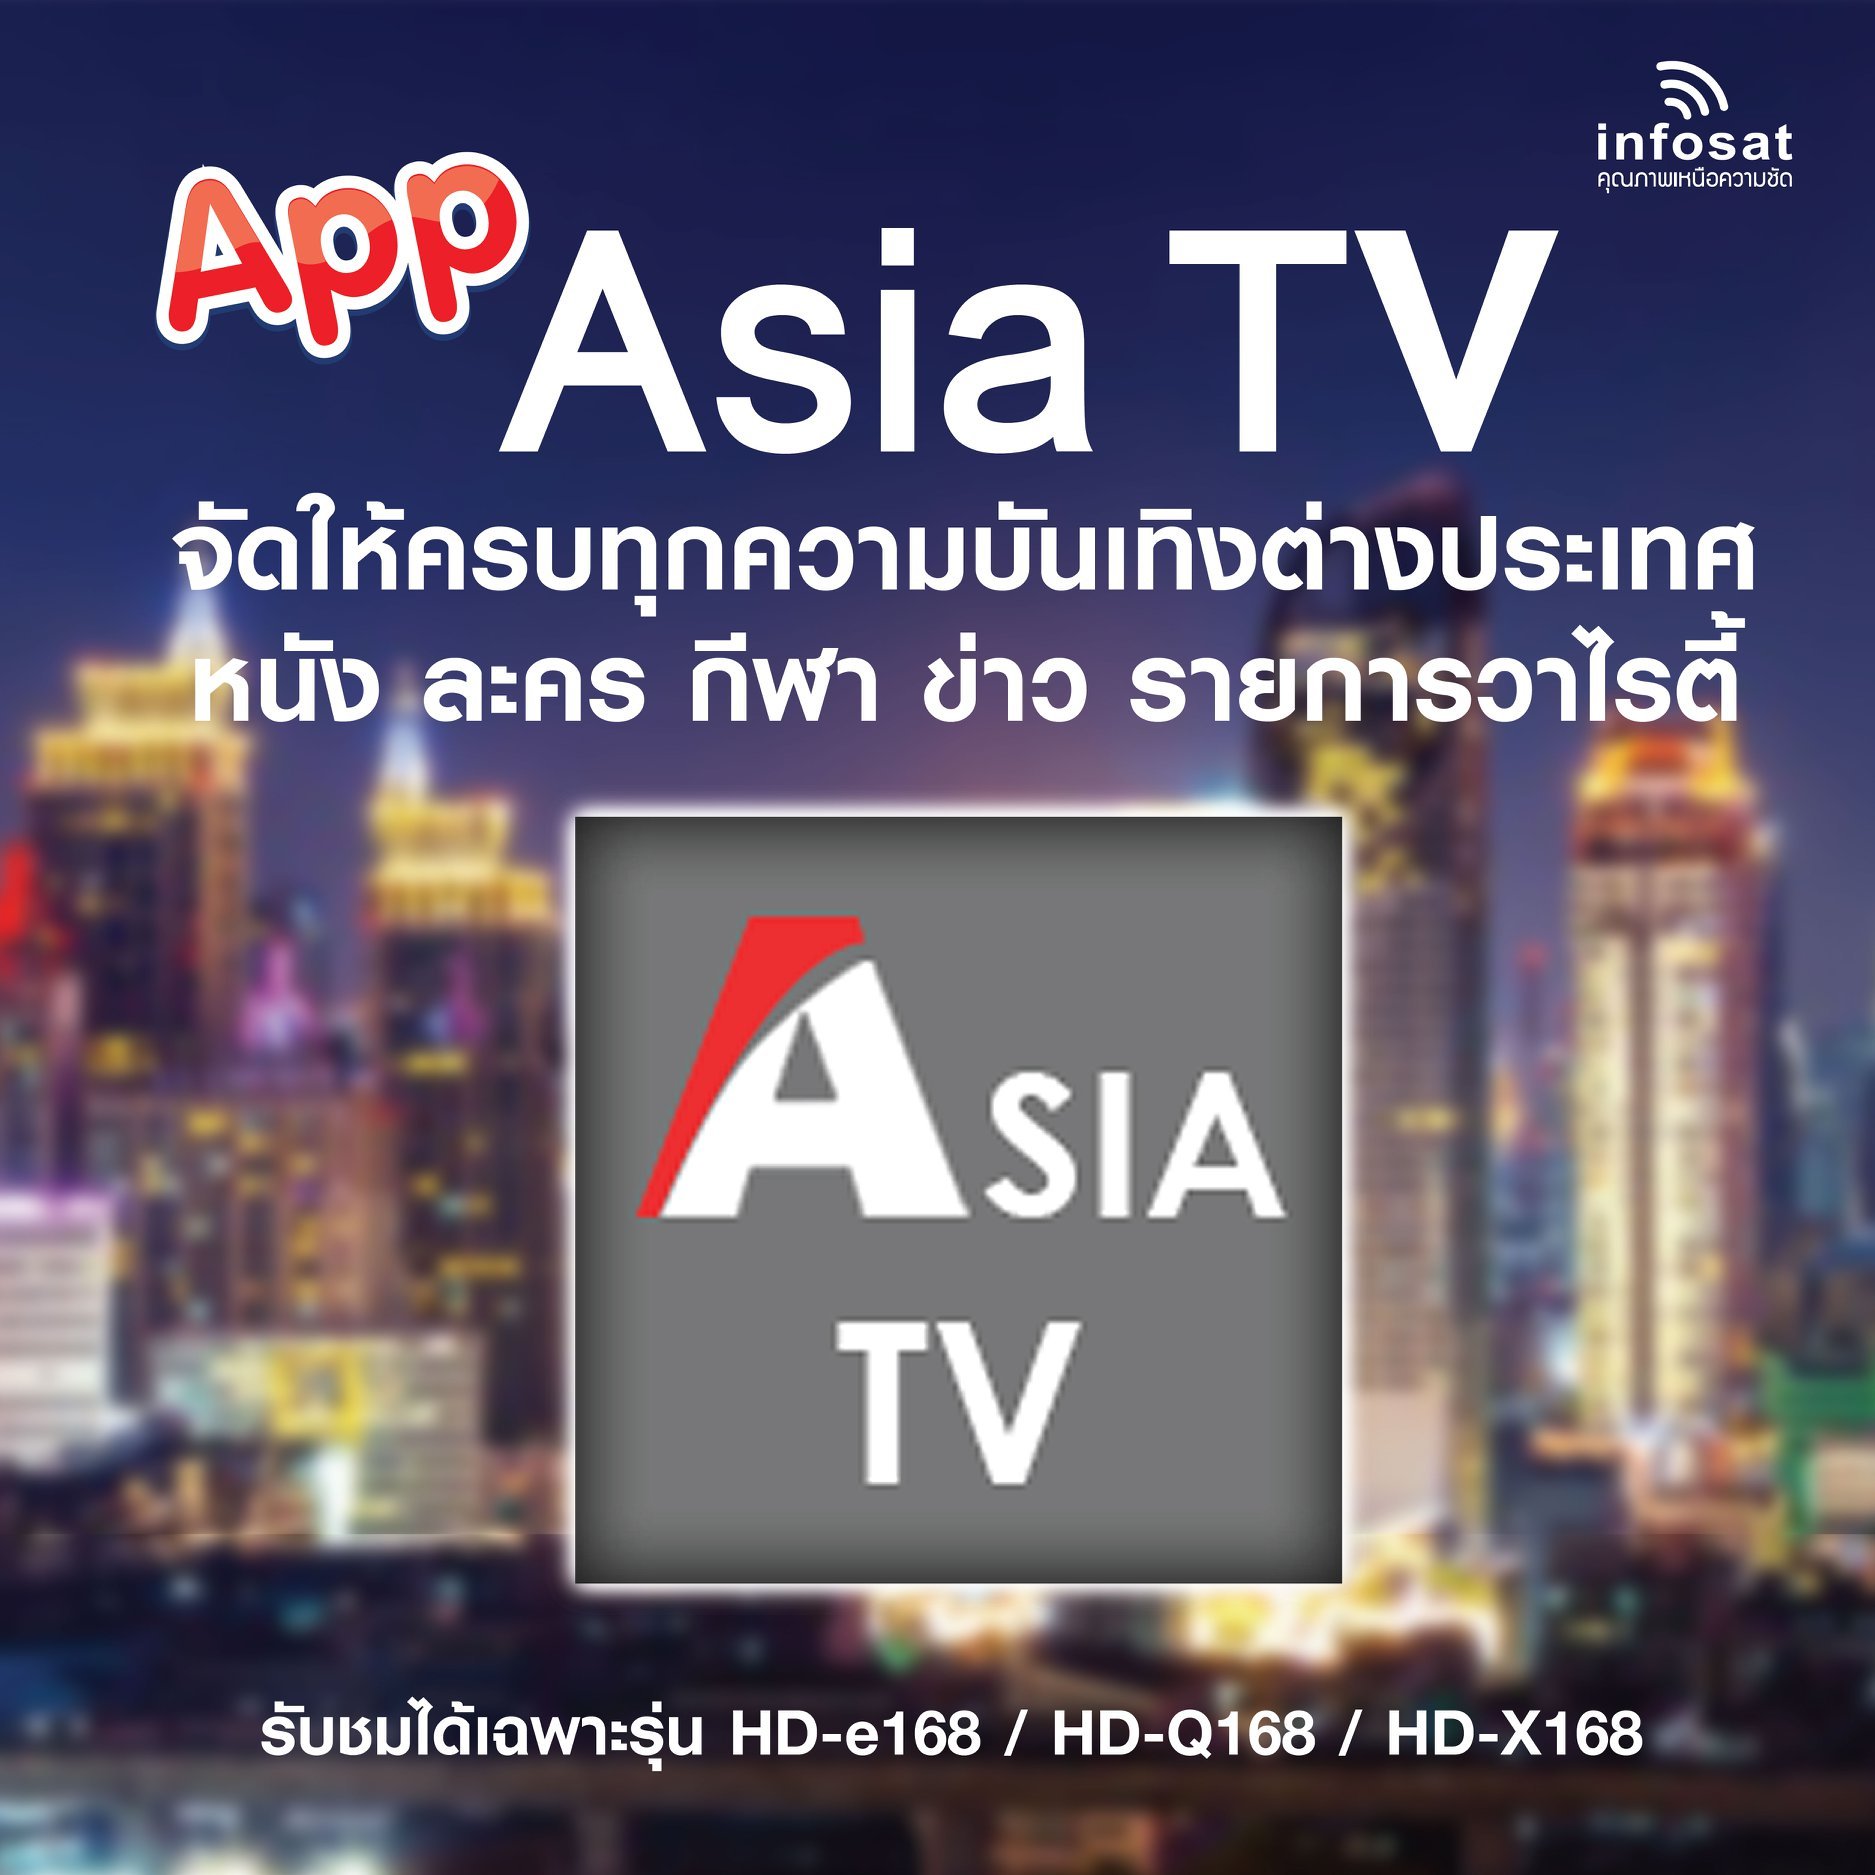 APP ASIA TV